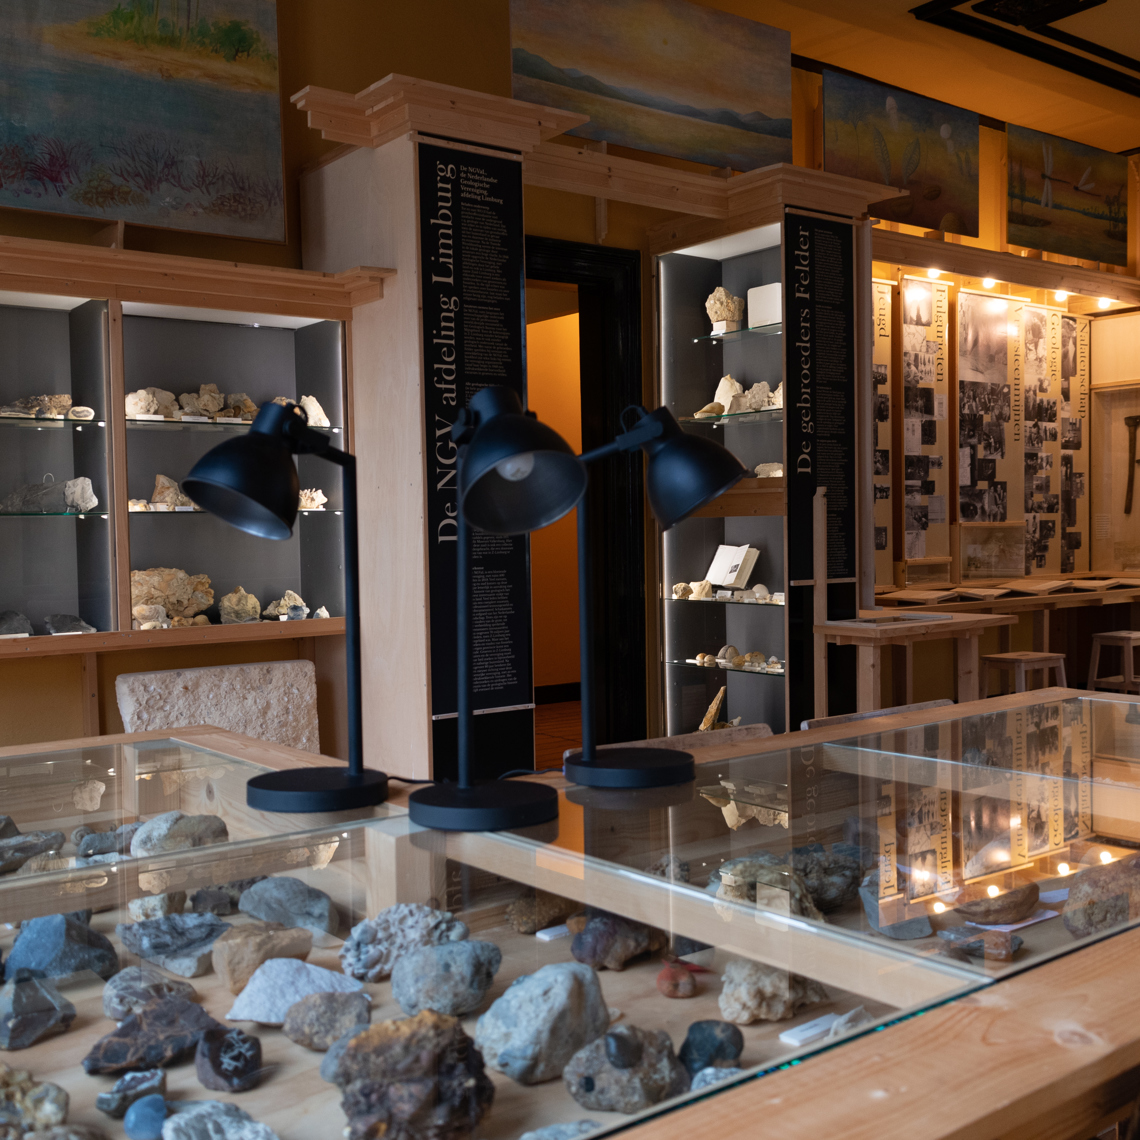 Kijkje in het natuurhistorisch museum met allerlei stenen in vitrines. 